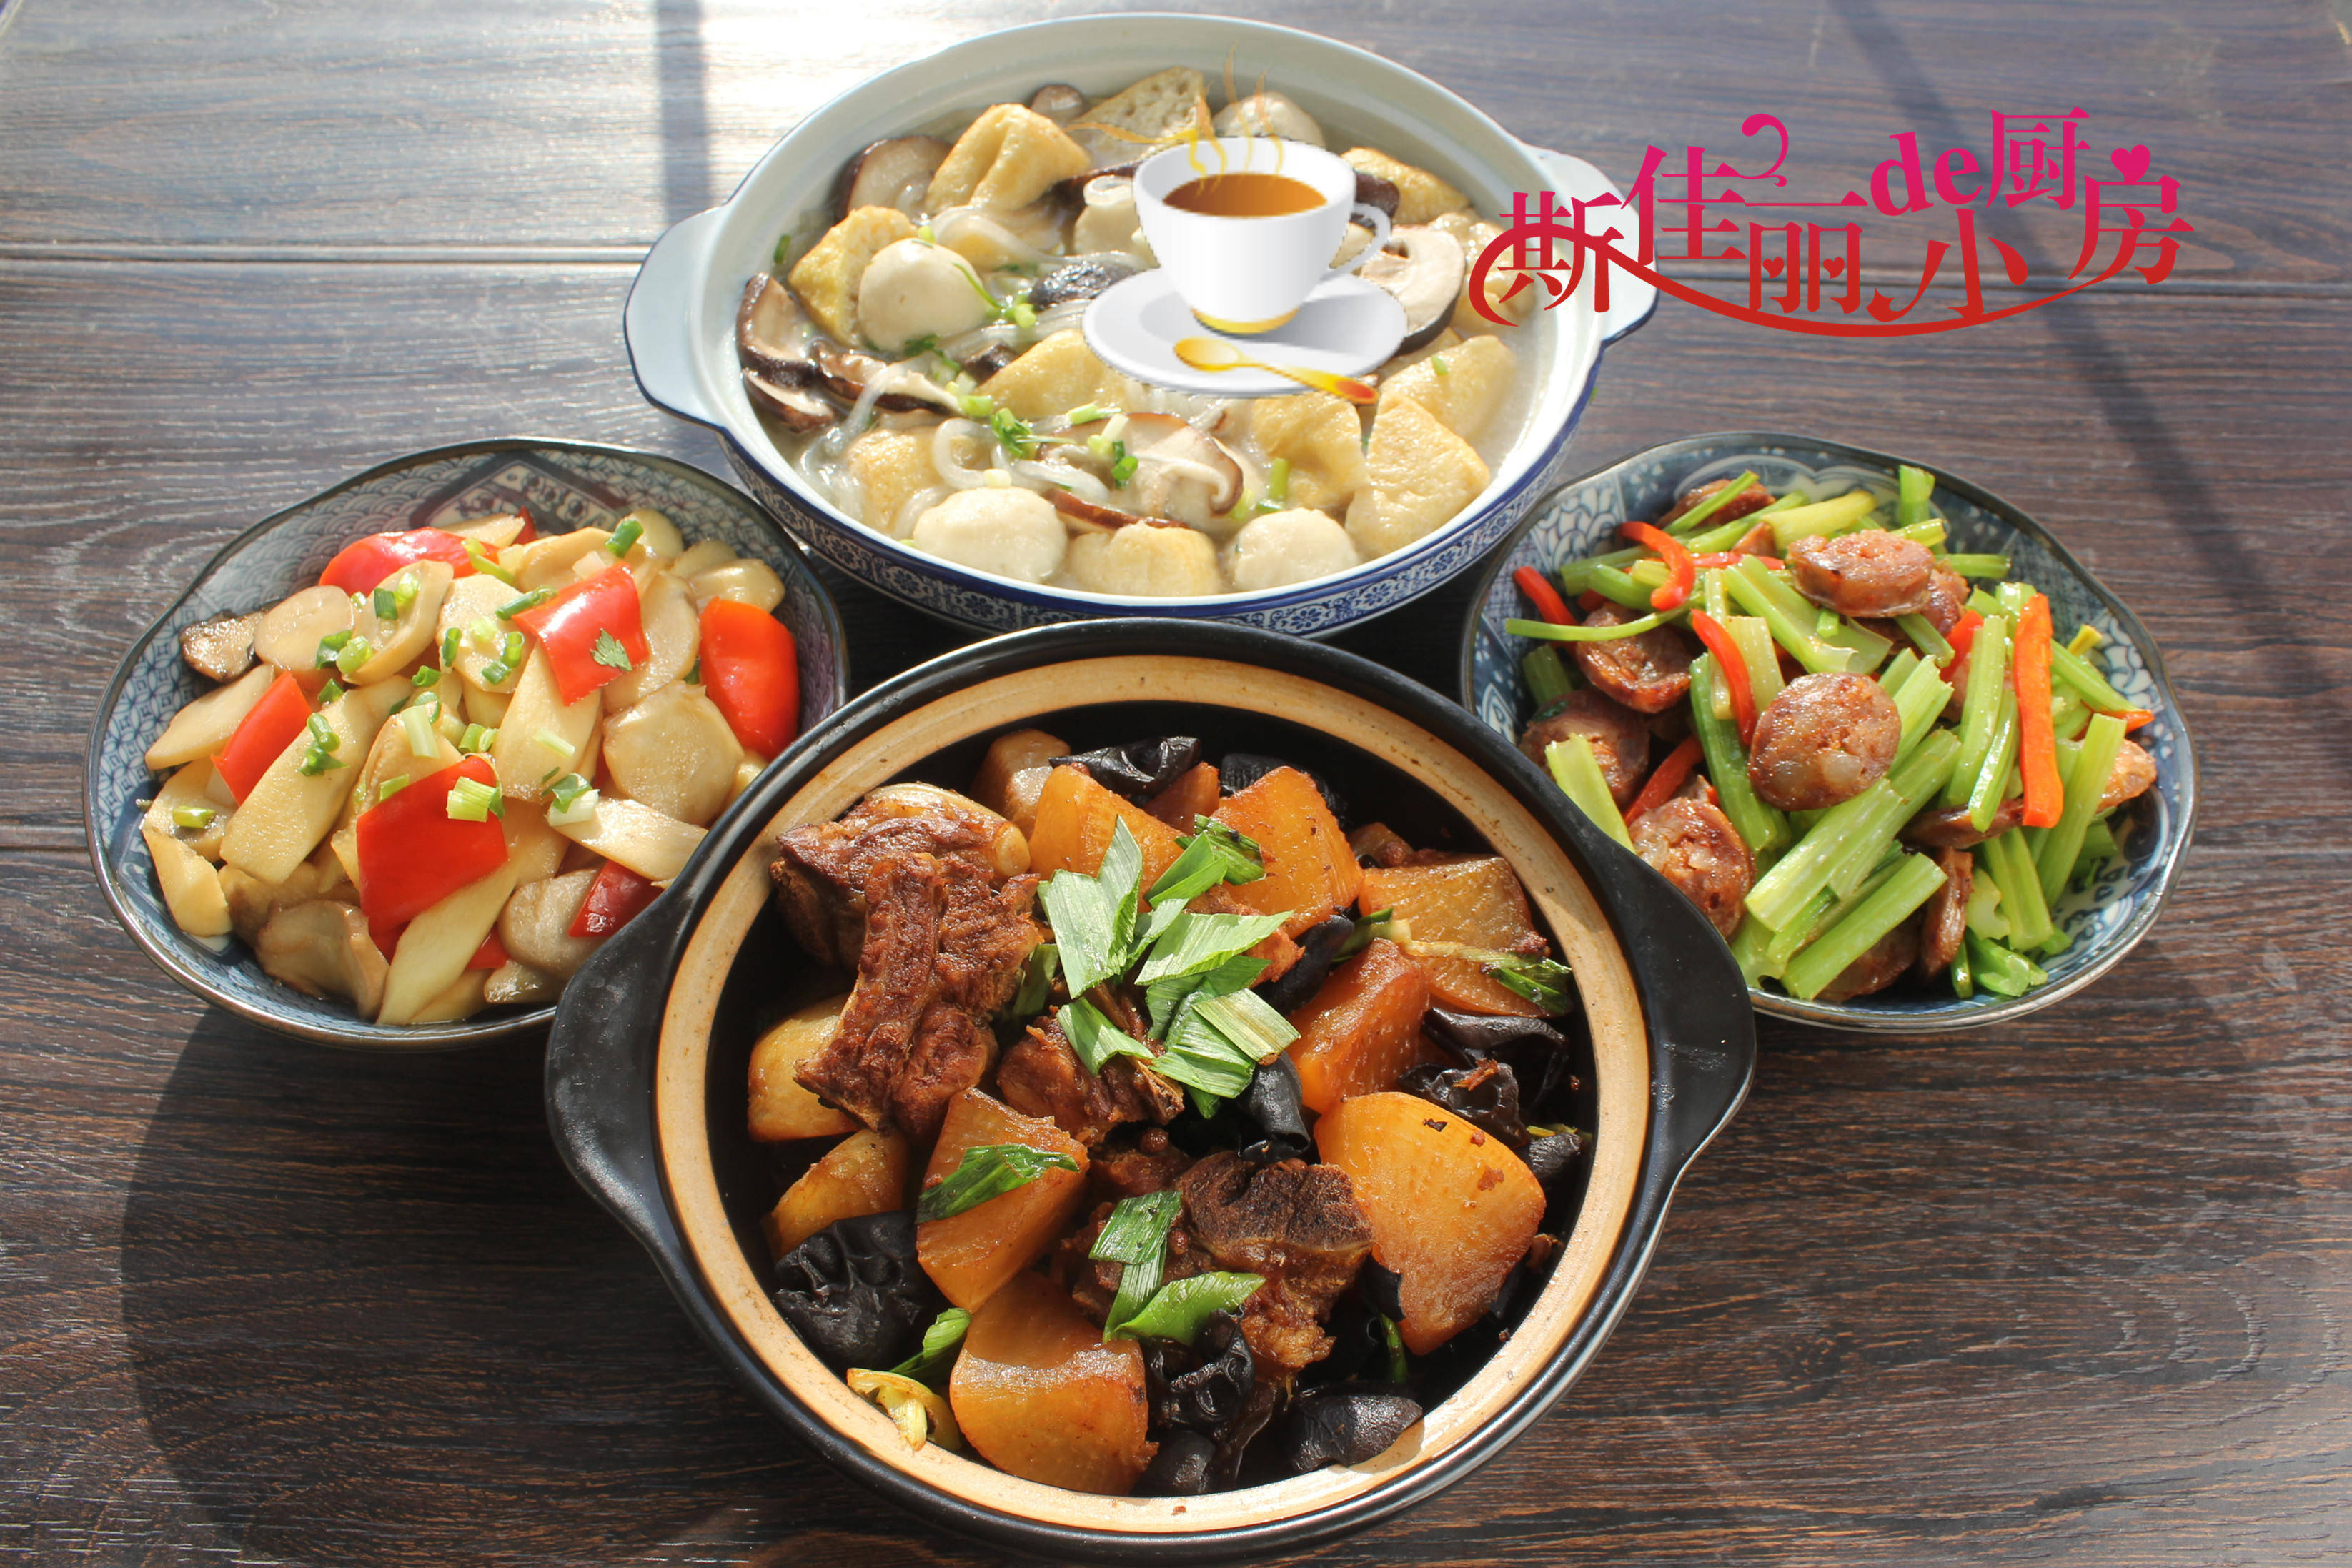 【3菜1汤】 3 Dishes + 1 Soup Home Cook Recipe (Vol.2) - Nanyang Kitchen 南洋小厨